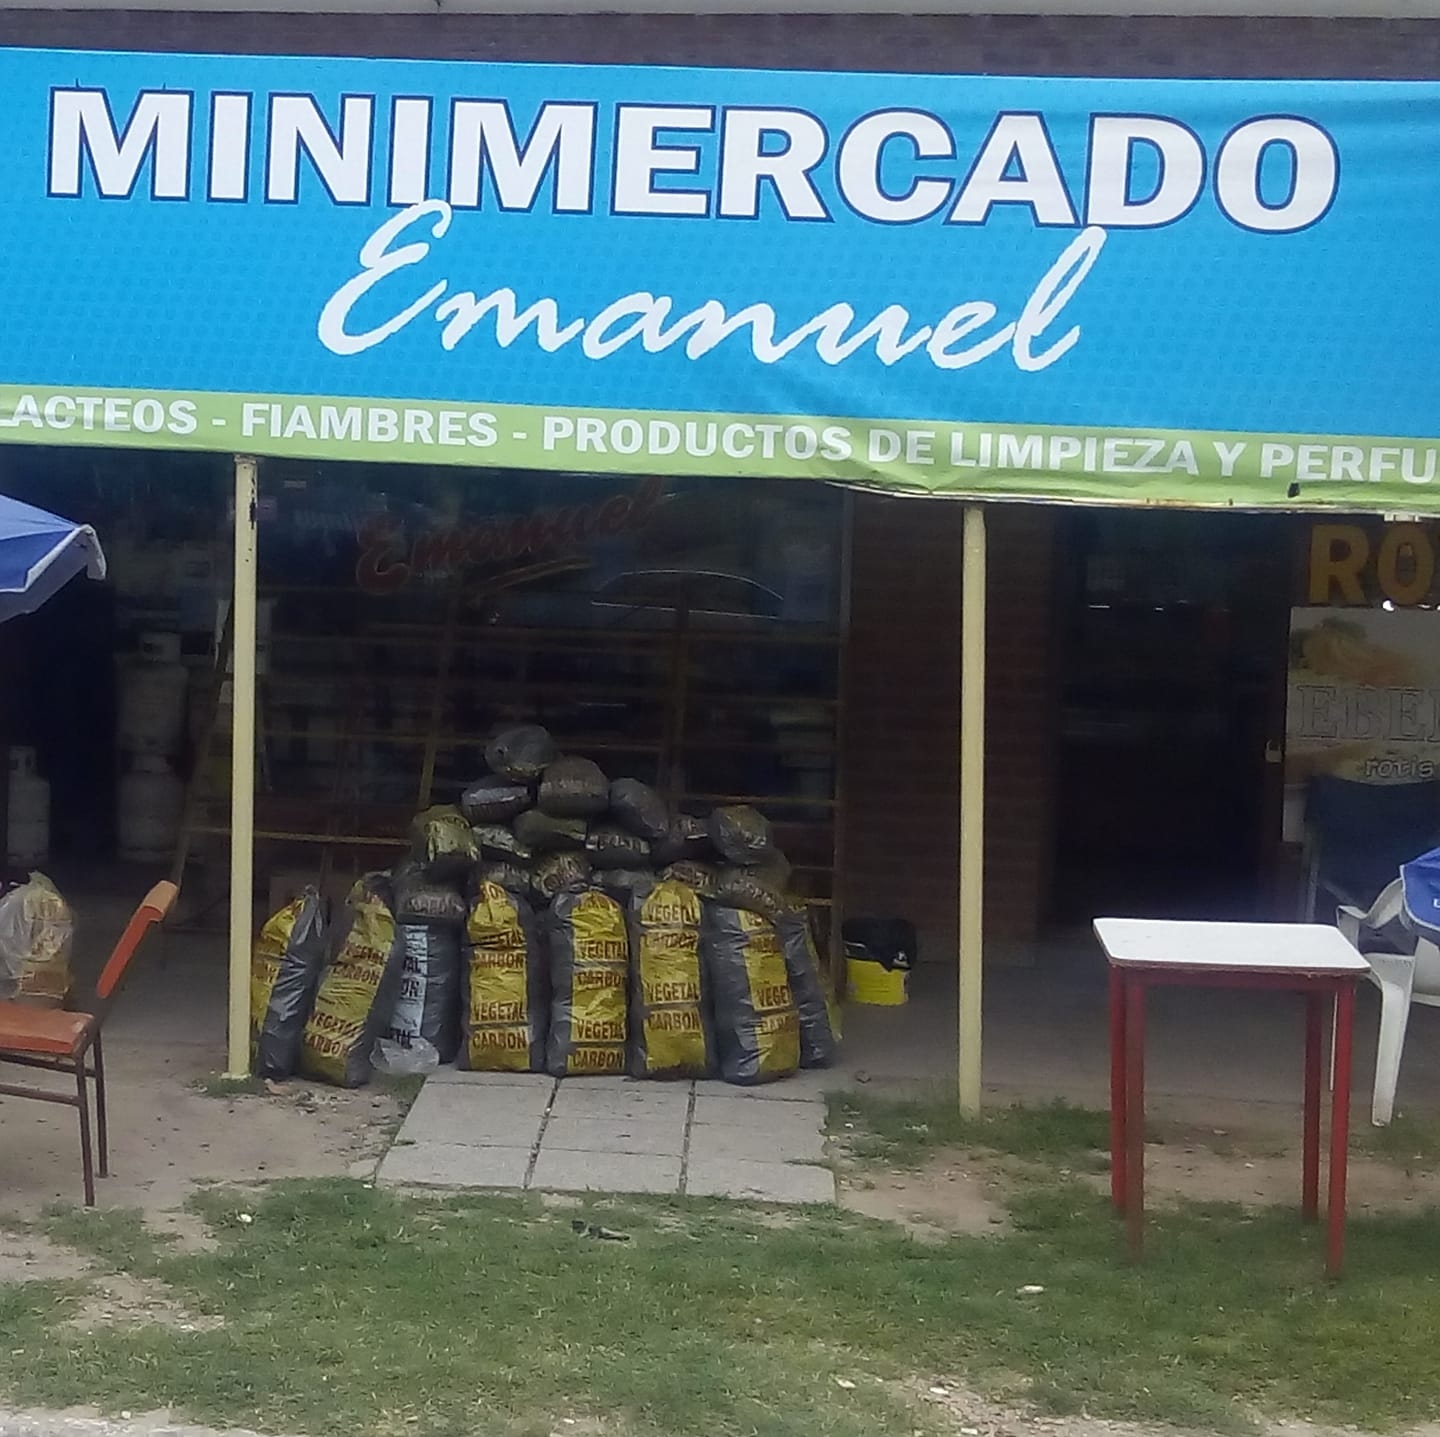 Minimercado Emanuel